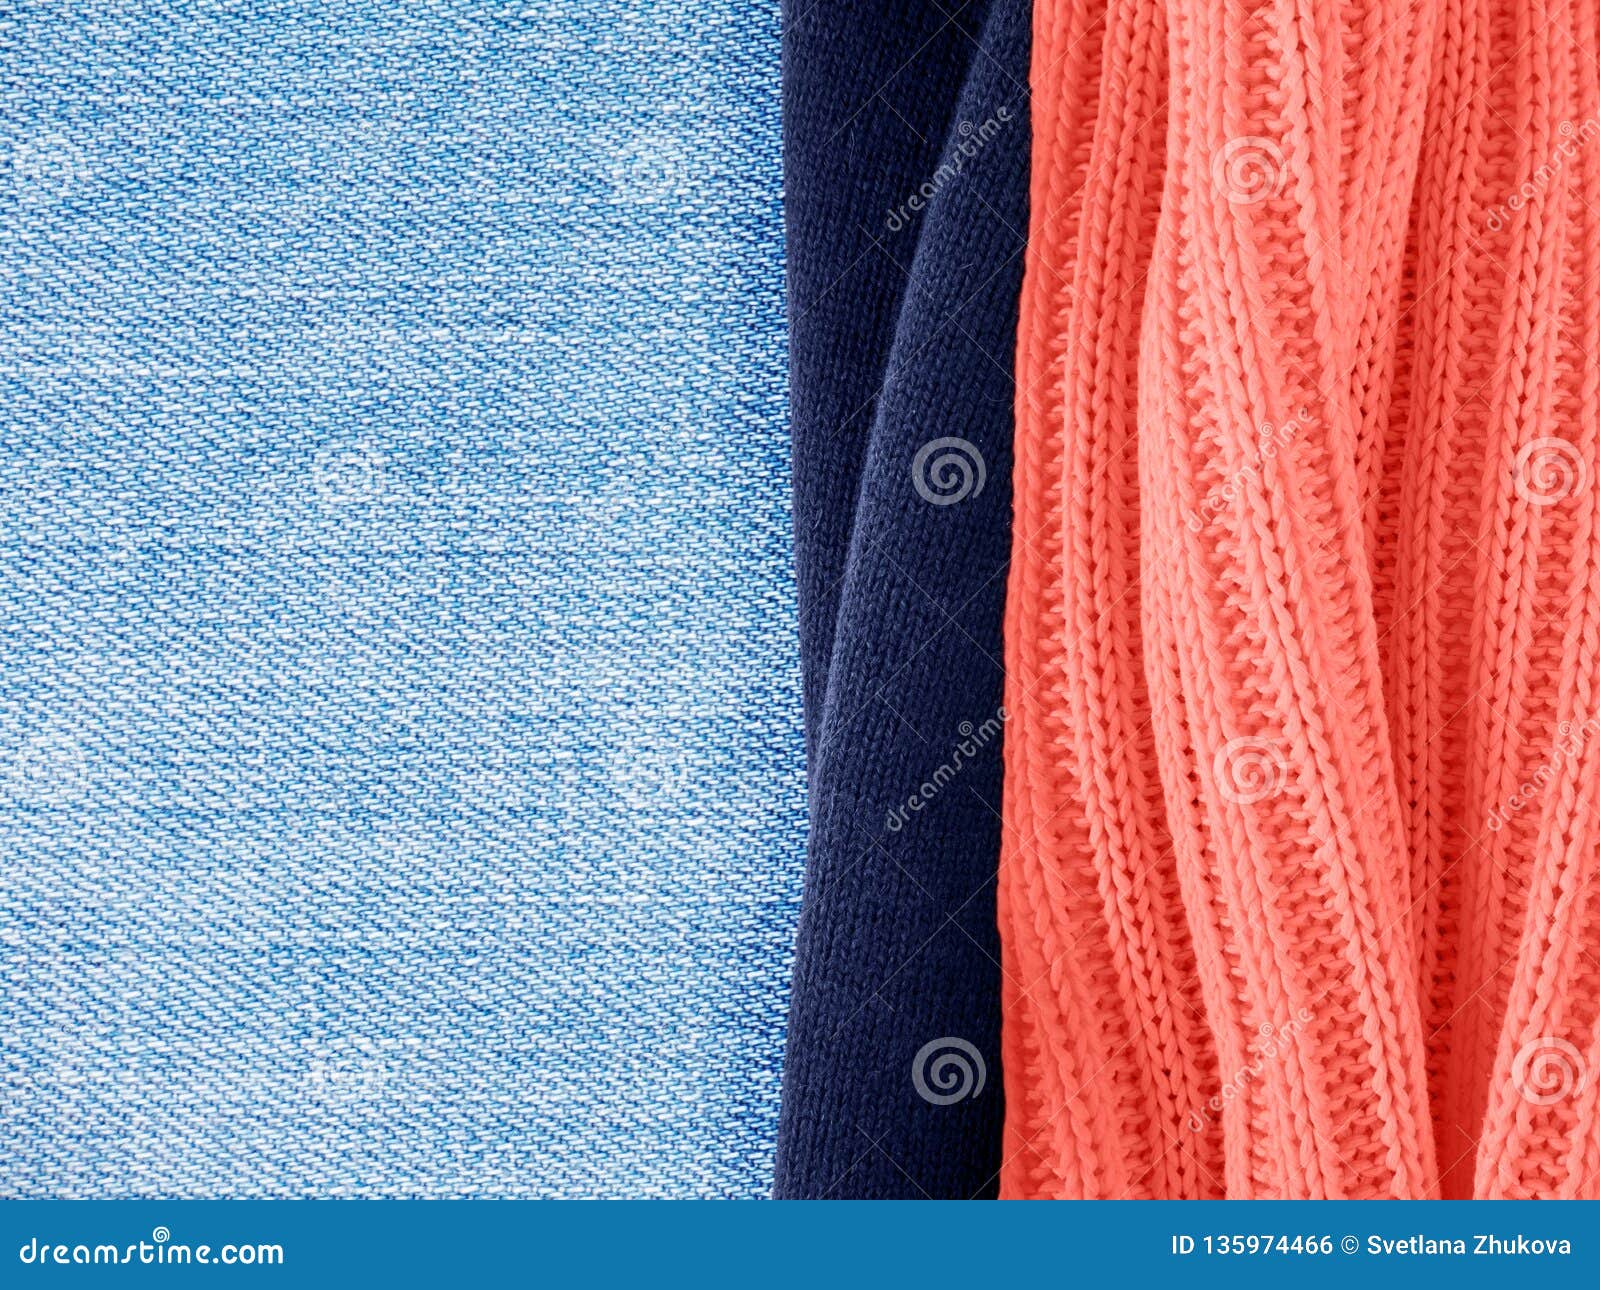 Maharam | Product | Textiles | Beck 016 Astute